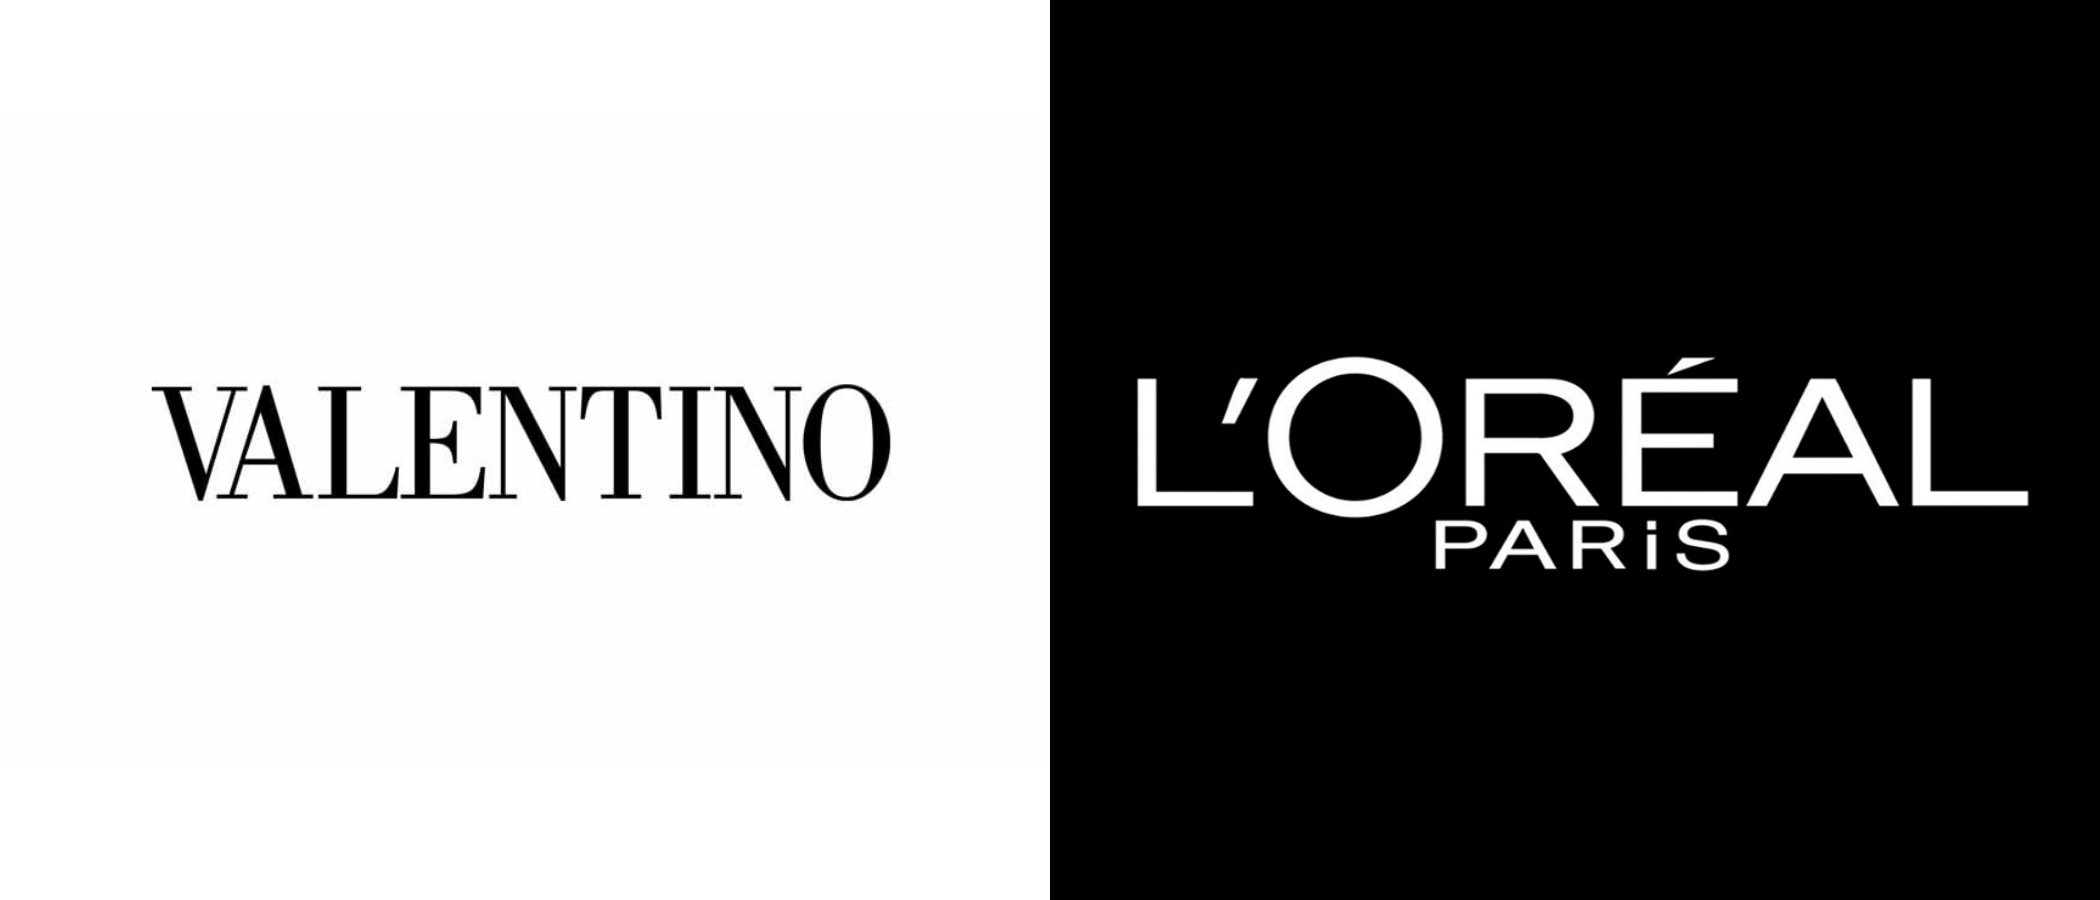 Valentino y L'Oreal se unen para crear una línea de cosméticos y fragancias de lujo